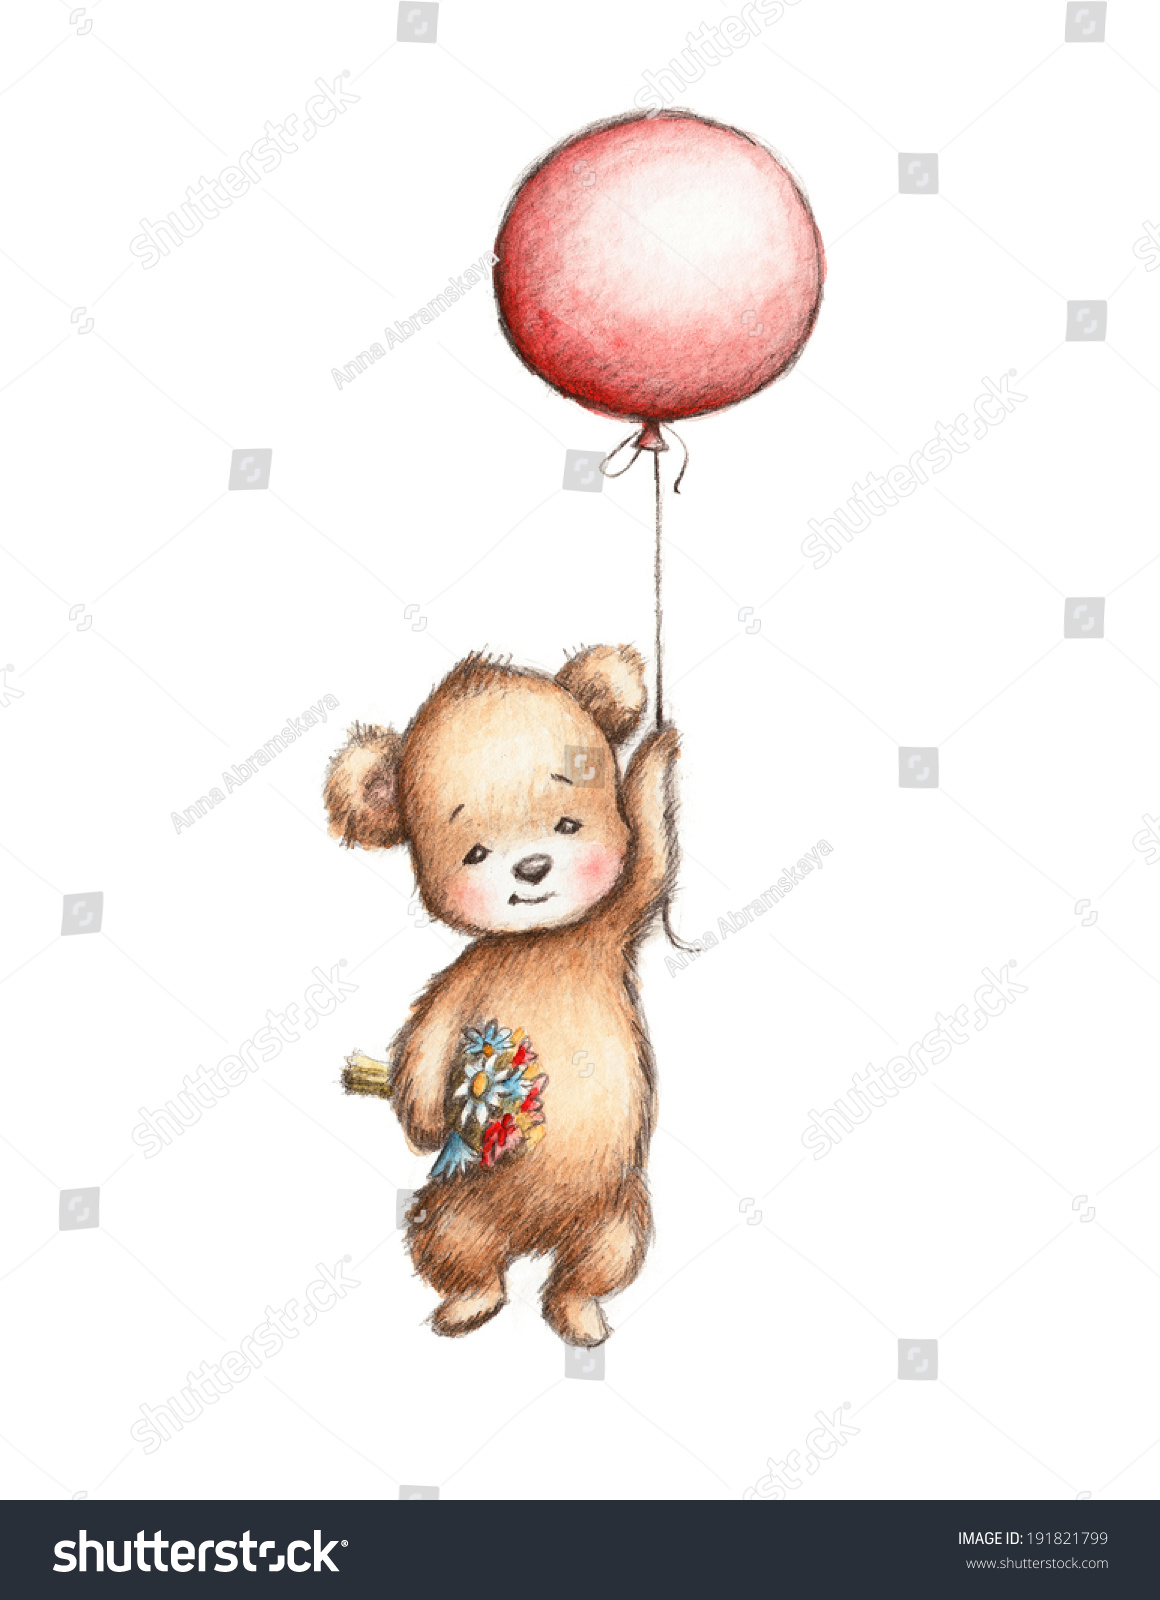 Медвежонок на воздушных шариках